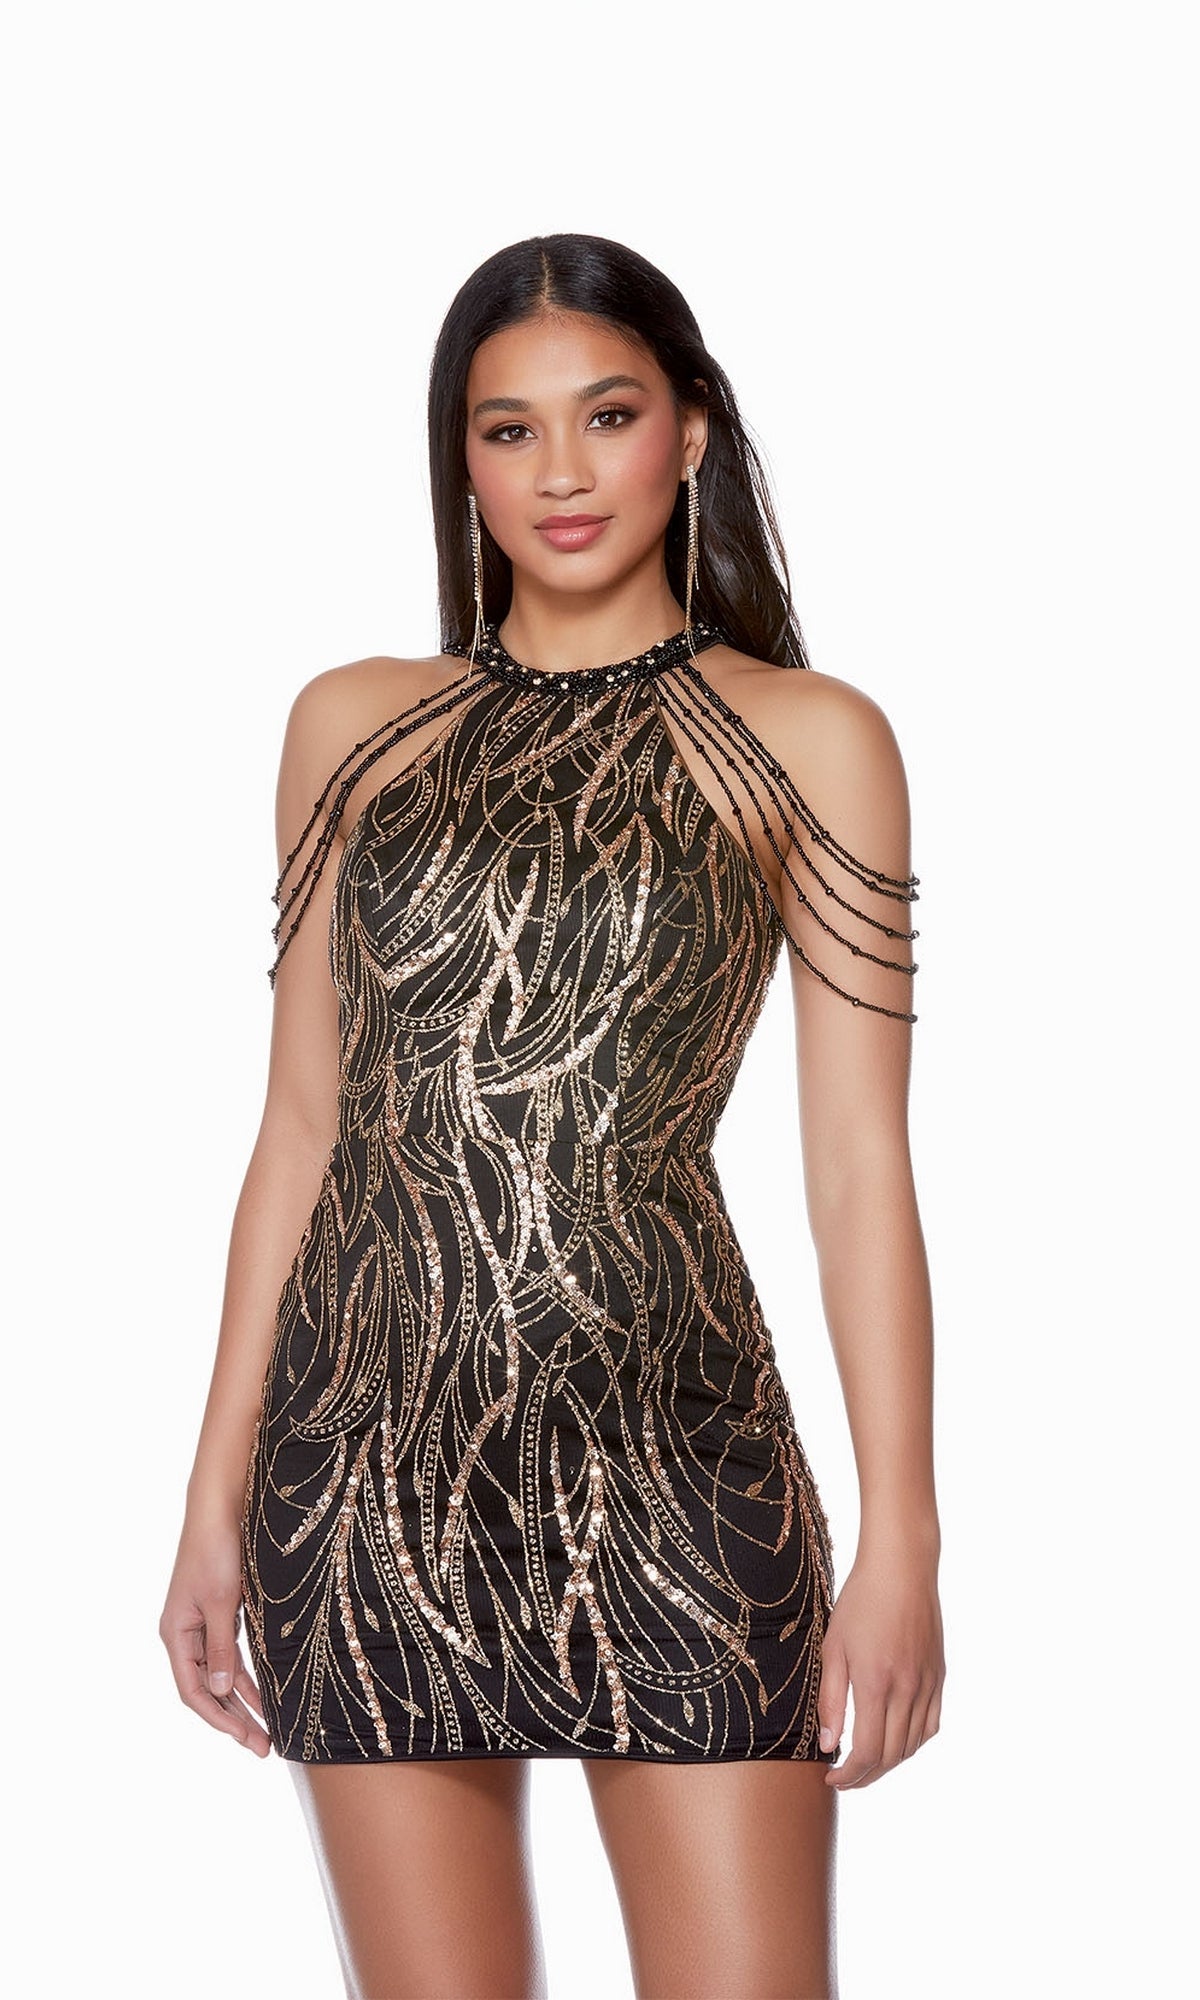  Beaded Glitter-Tulle Short Homecoming Dress 4682